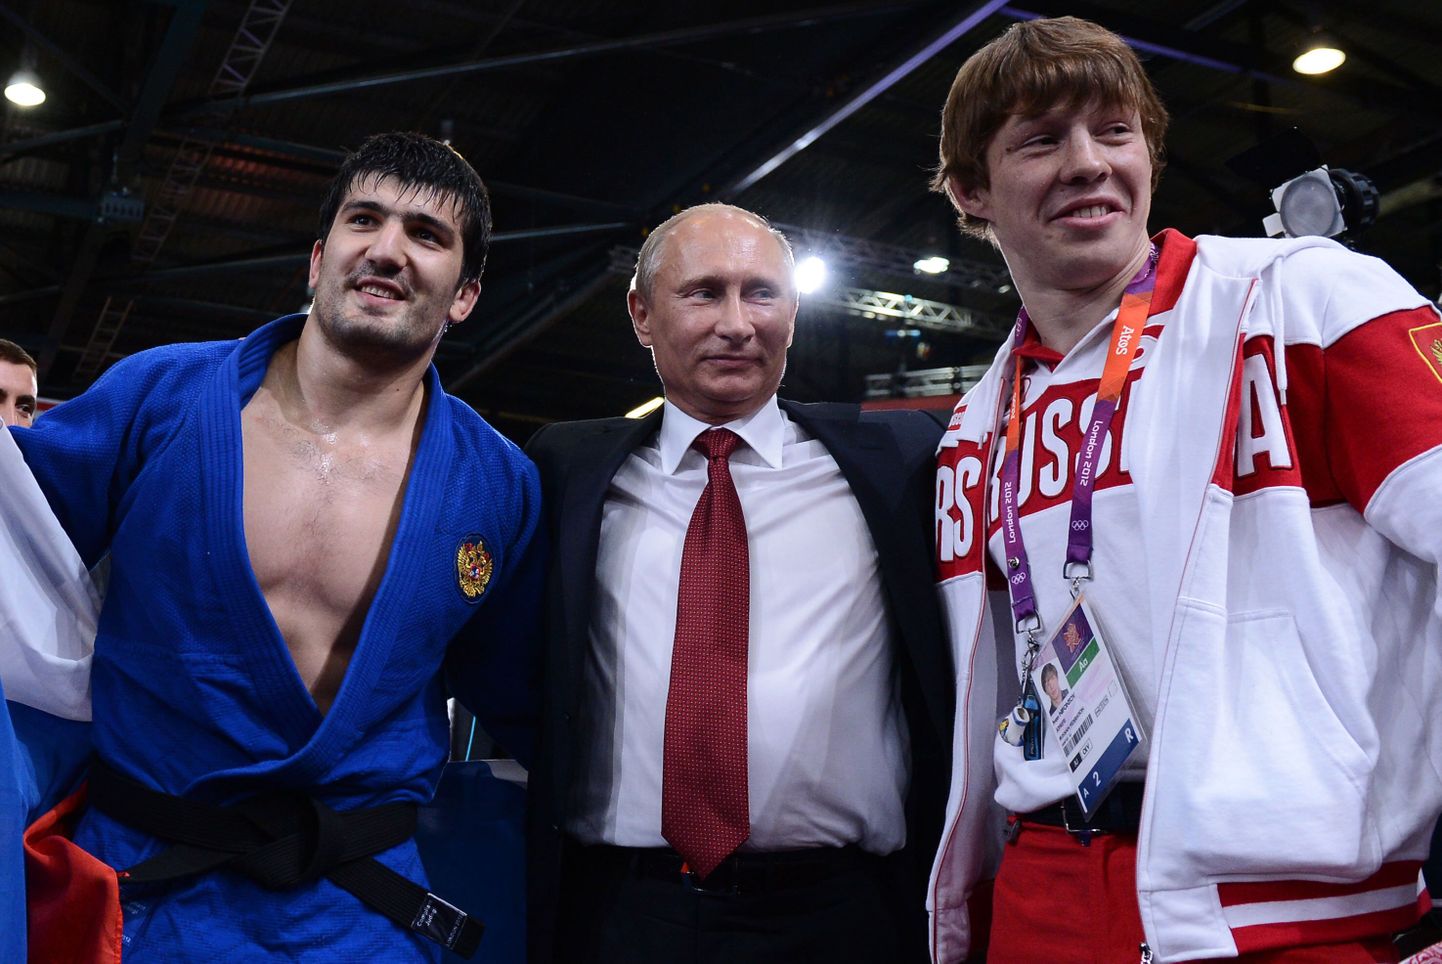 Venemaa judokoondis võitis Londoni OMilt viis medalit ja tšempione käis õnnitlemas ka Vladimir Putin. Riosse sõidab medaleid jahtima 11 venelasest judokat.